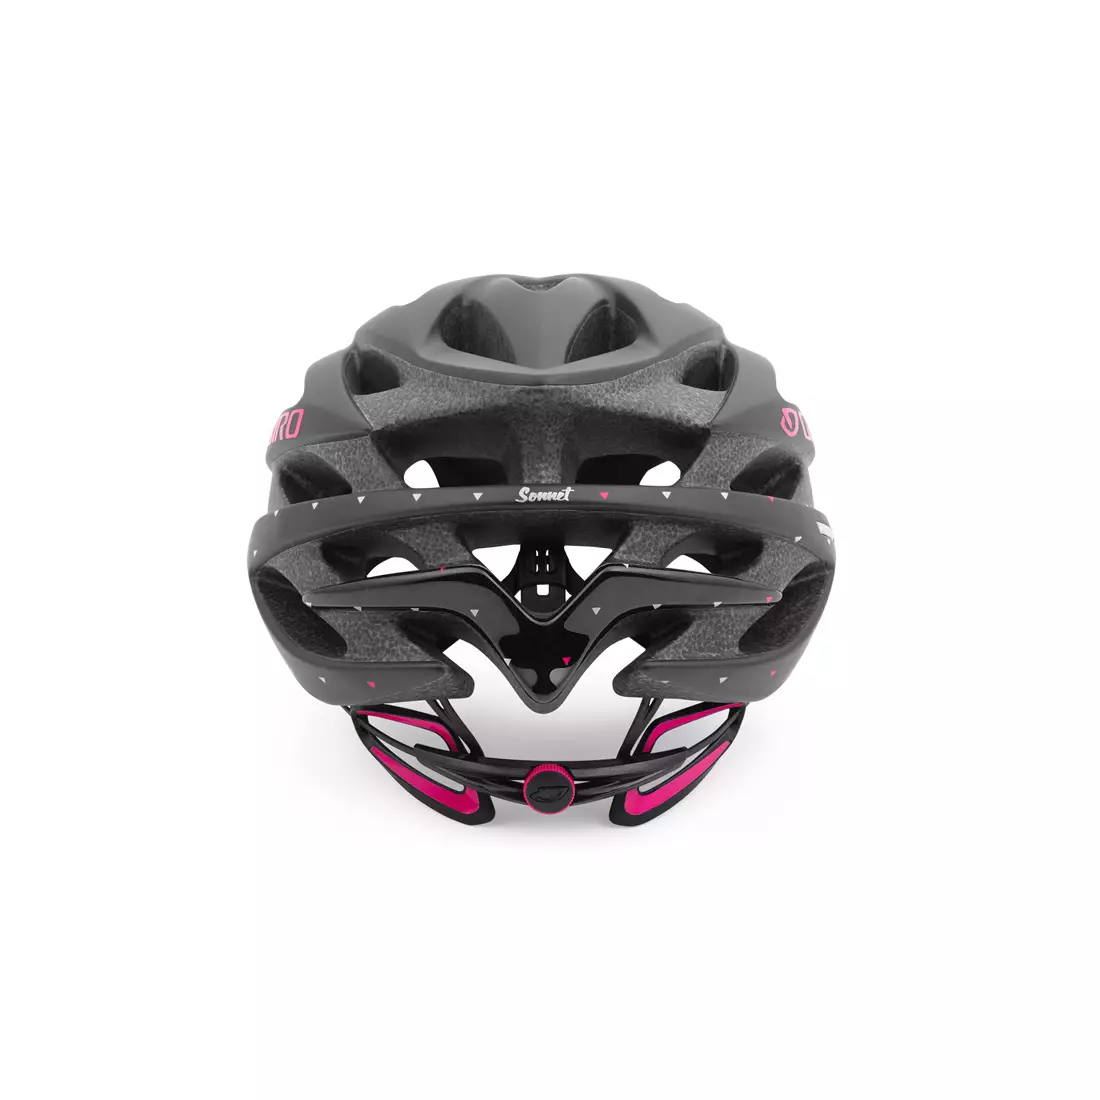 GIRO SONNET - női kerékpáros sisak, fekete és rózsaszín matt